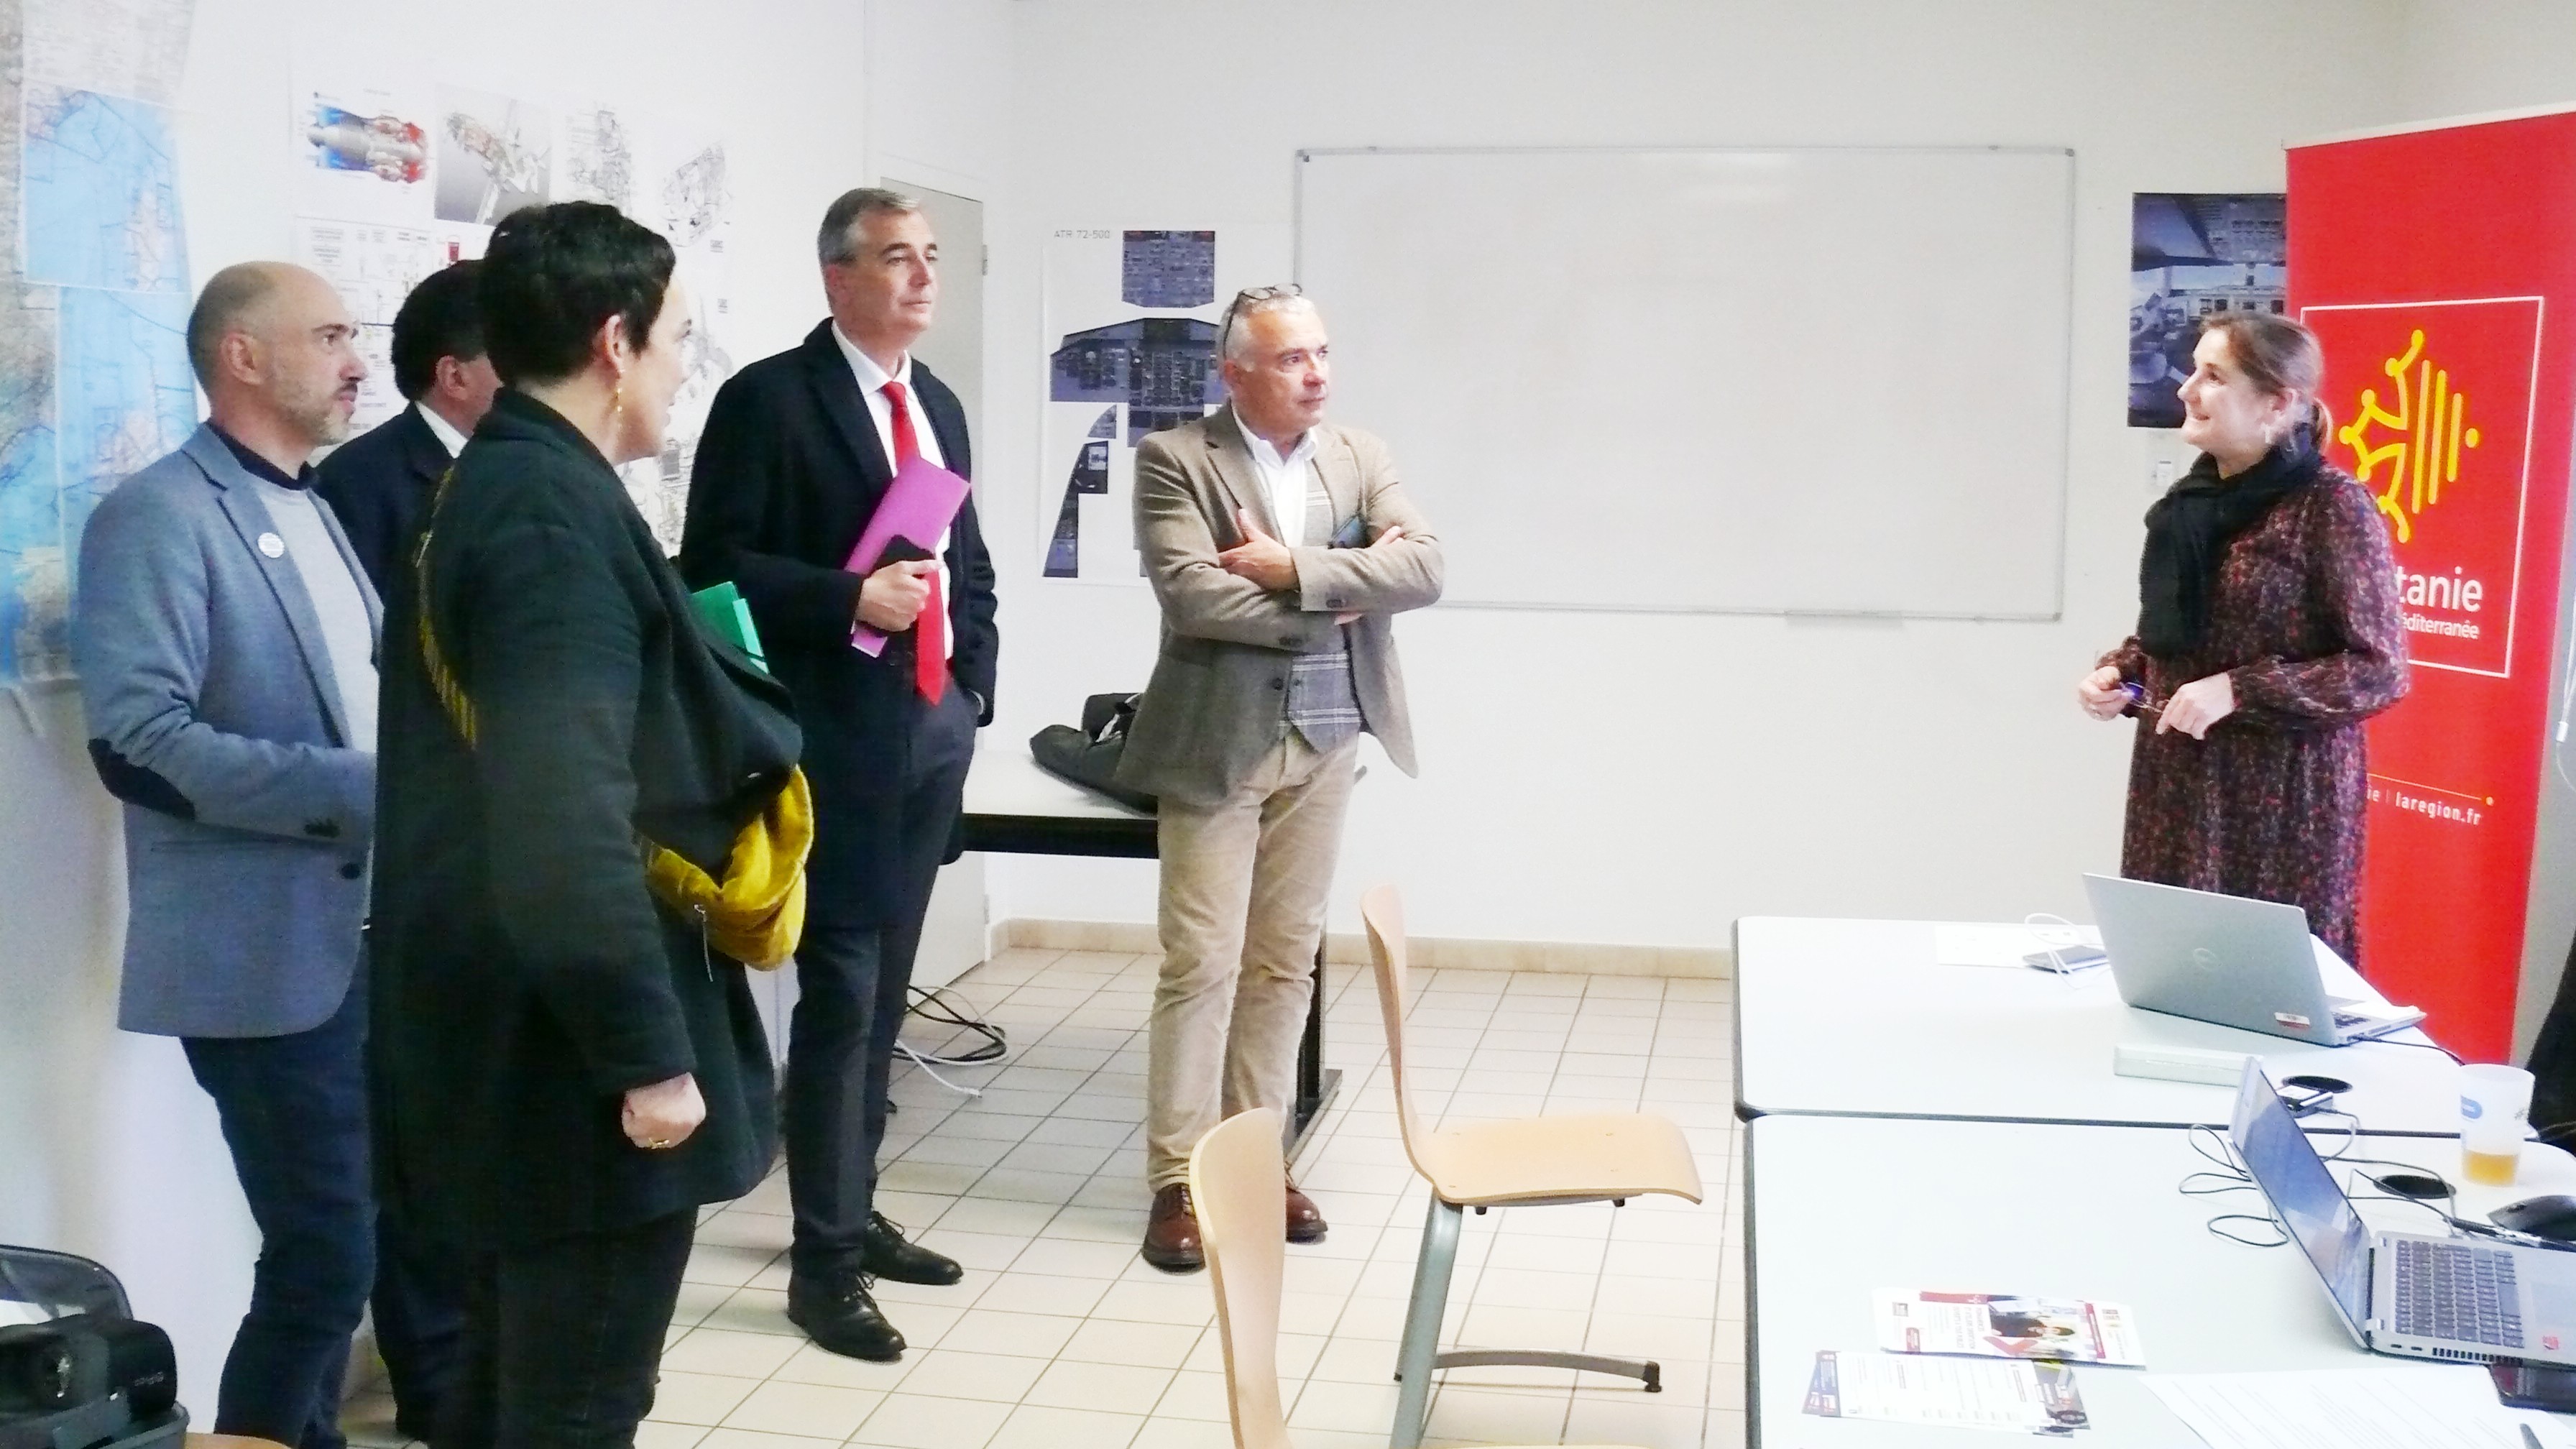 Le préfet, Laurent Carrié, le président de la CCI, Rémi Branet, et Jérôme Samalens, visitent le stand Occitanie.